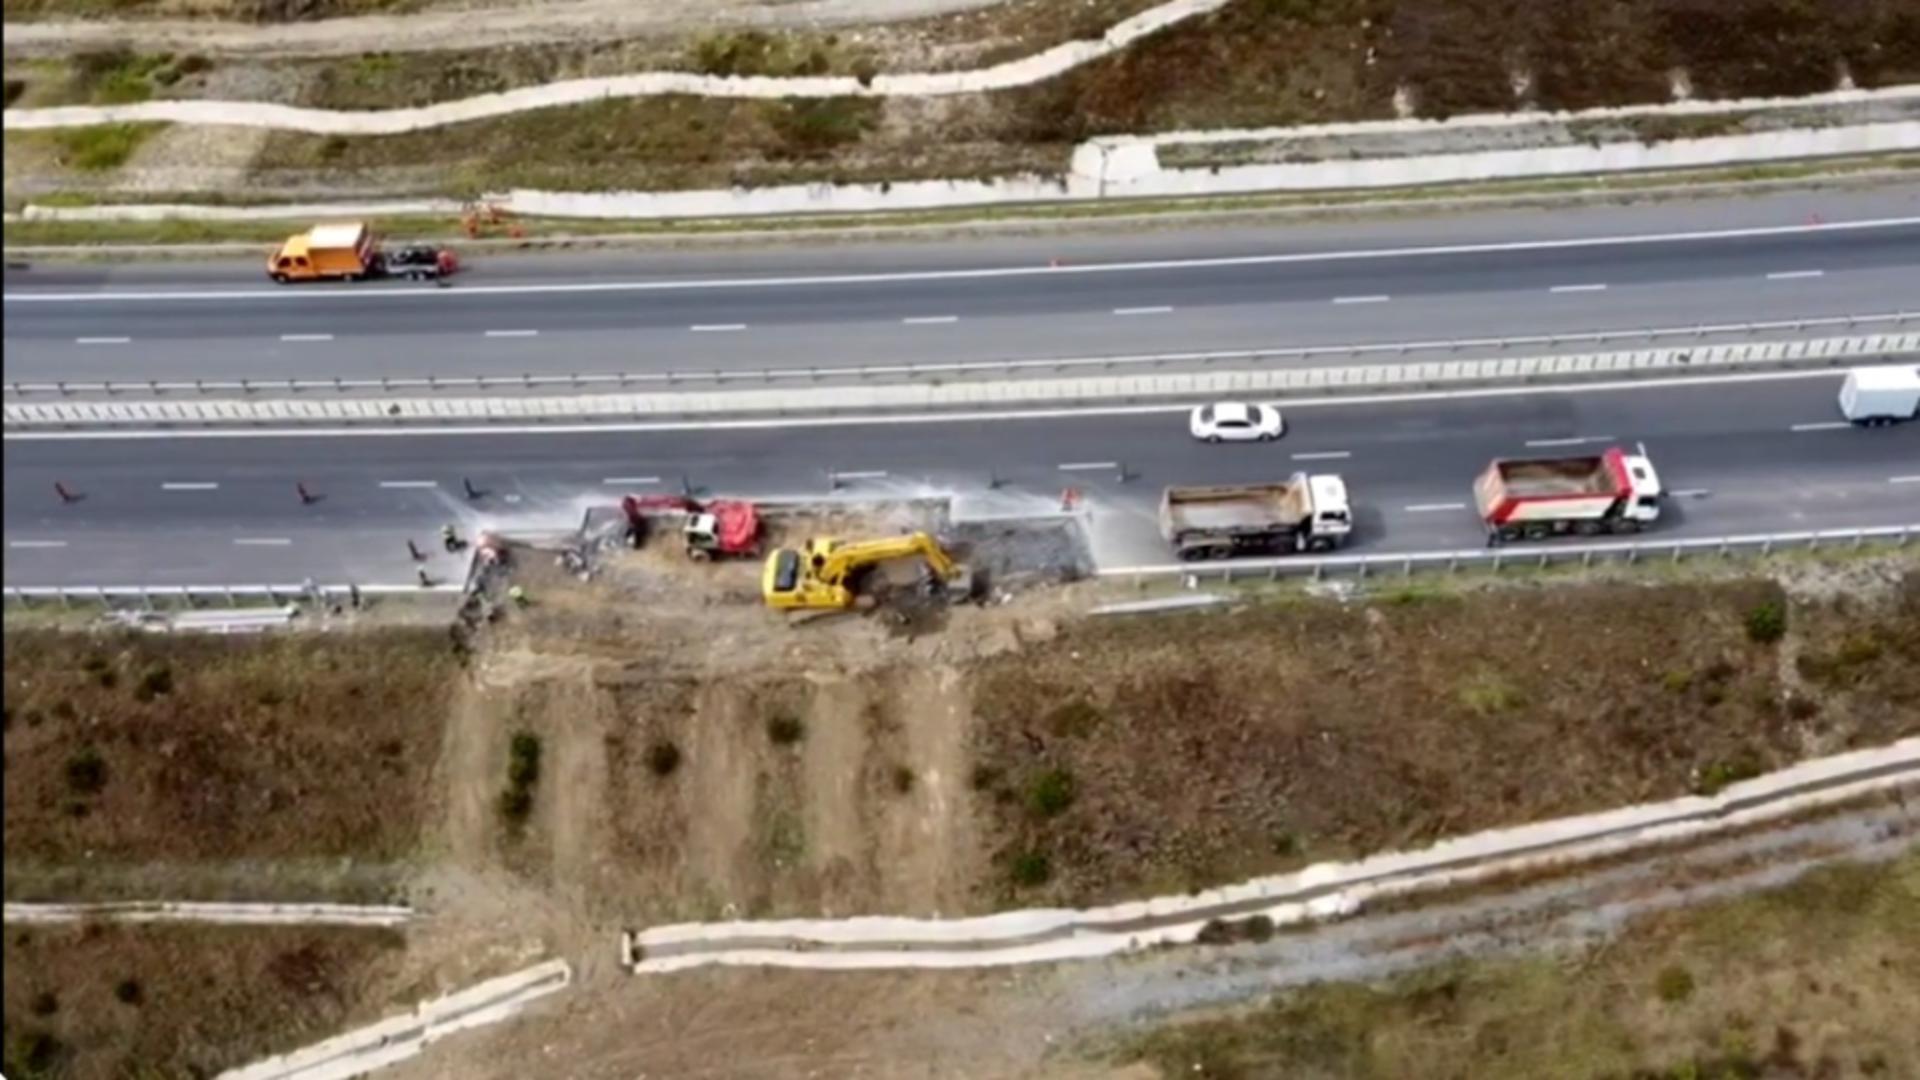 Restricții de circulație pentru lucrări la un tronson de pe autostrada A10, pe cale să se prăbușească. Foto: YouTube